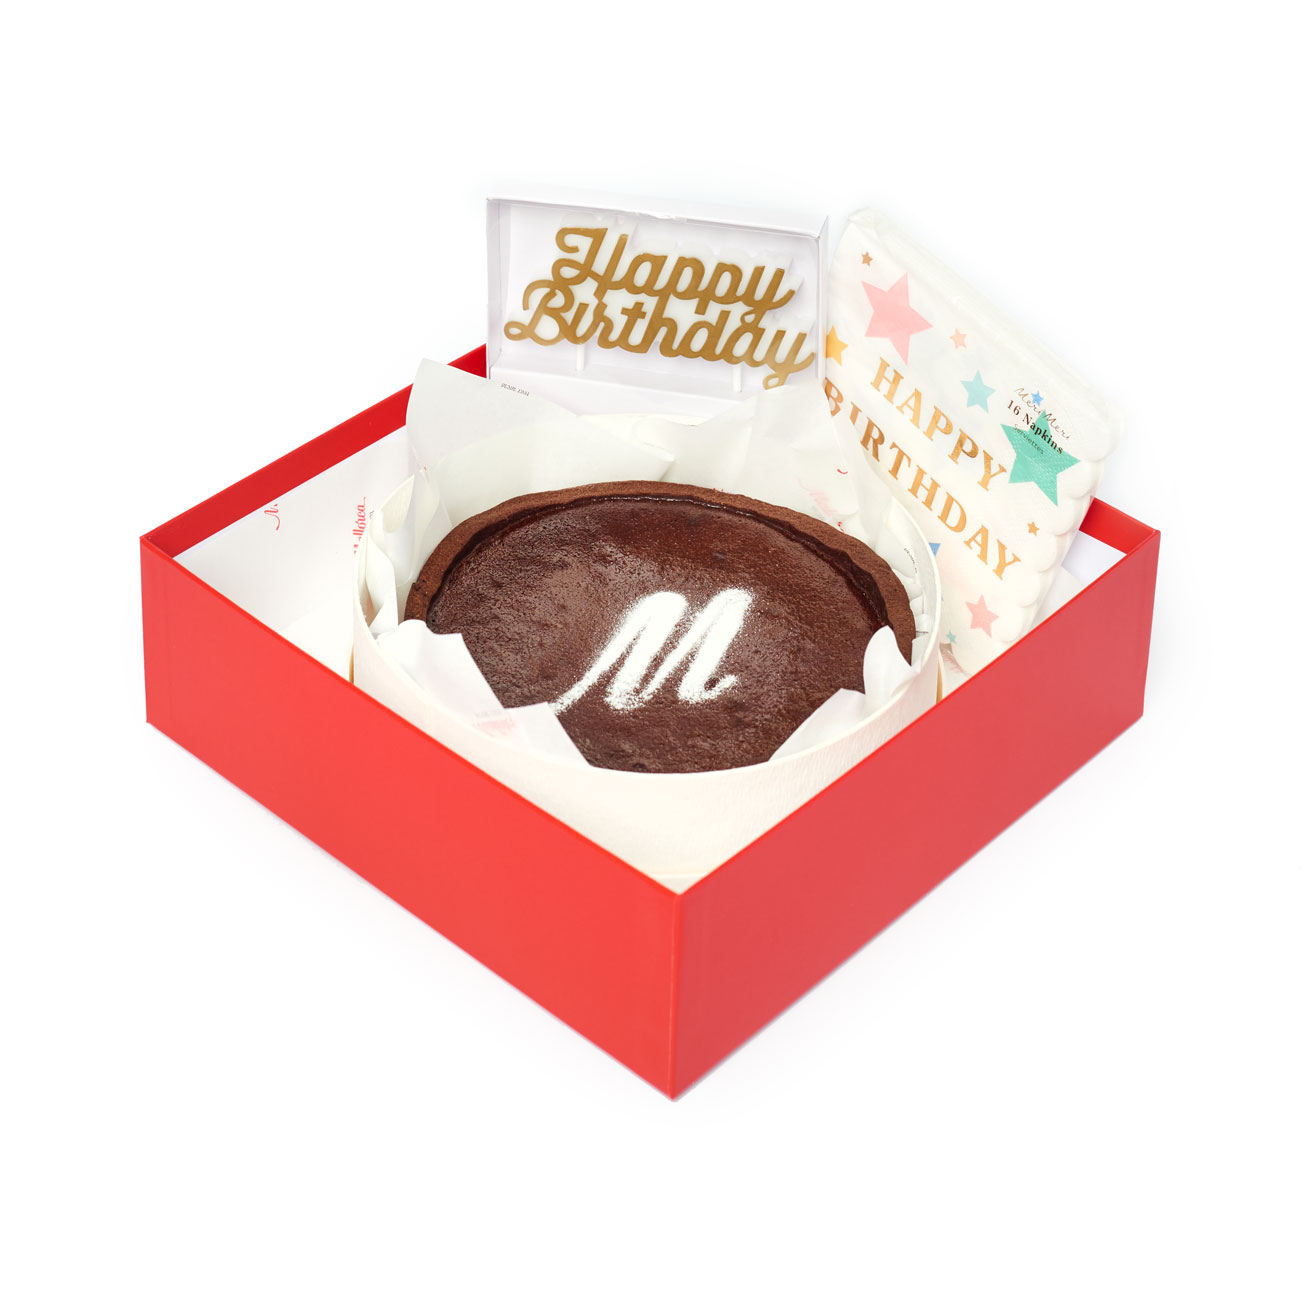 Regalo Feliz cumpleaños tarta chocolate de Pastelería Mallorca